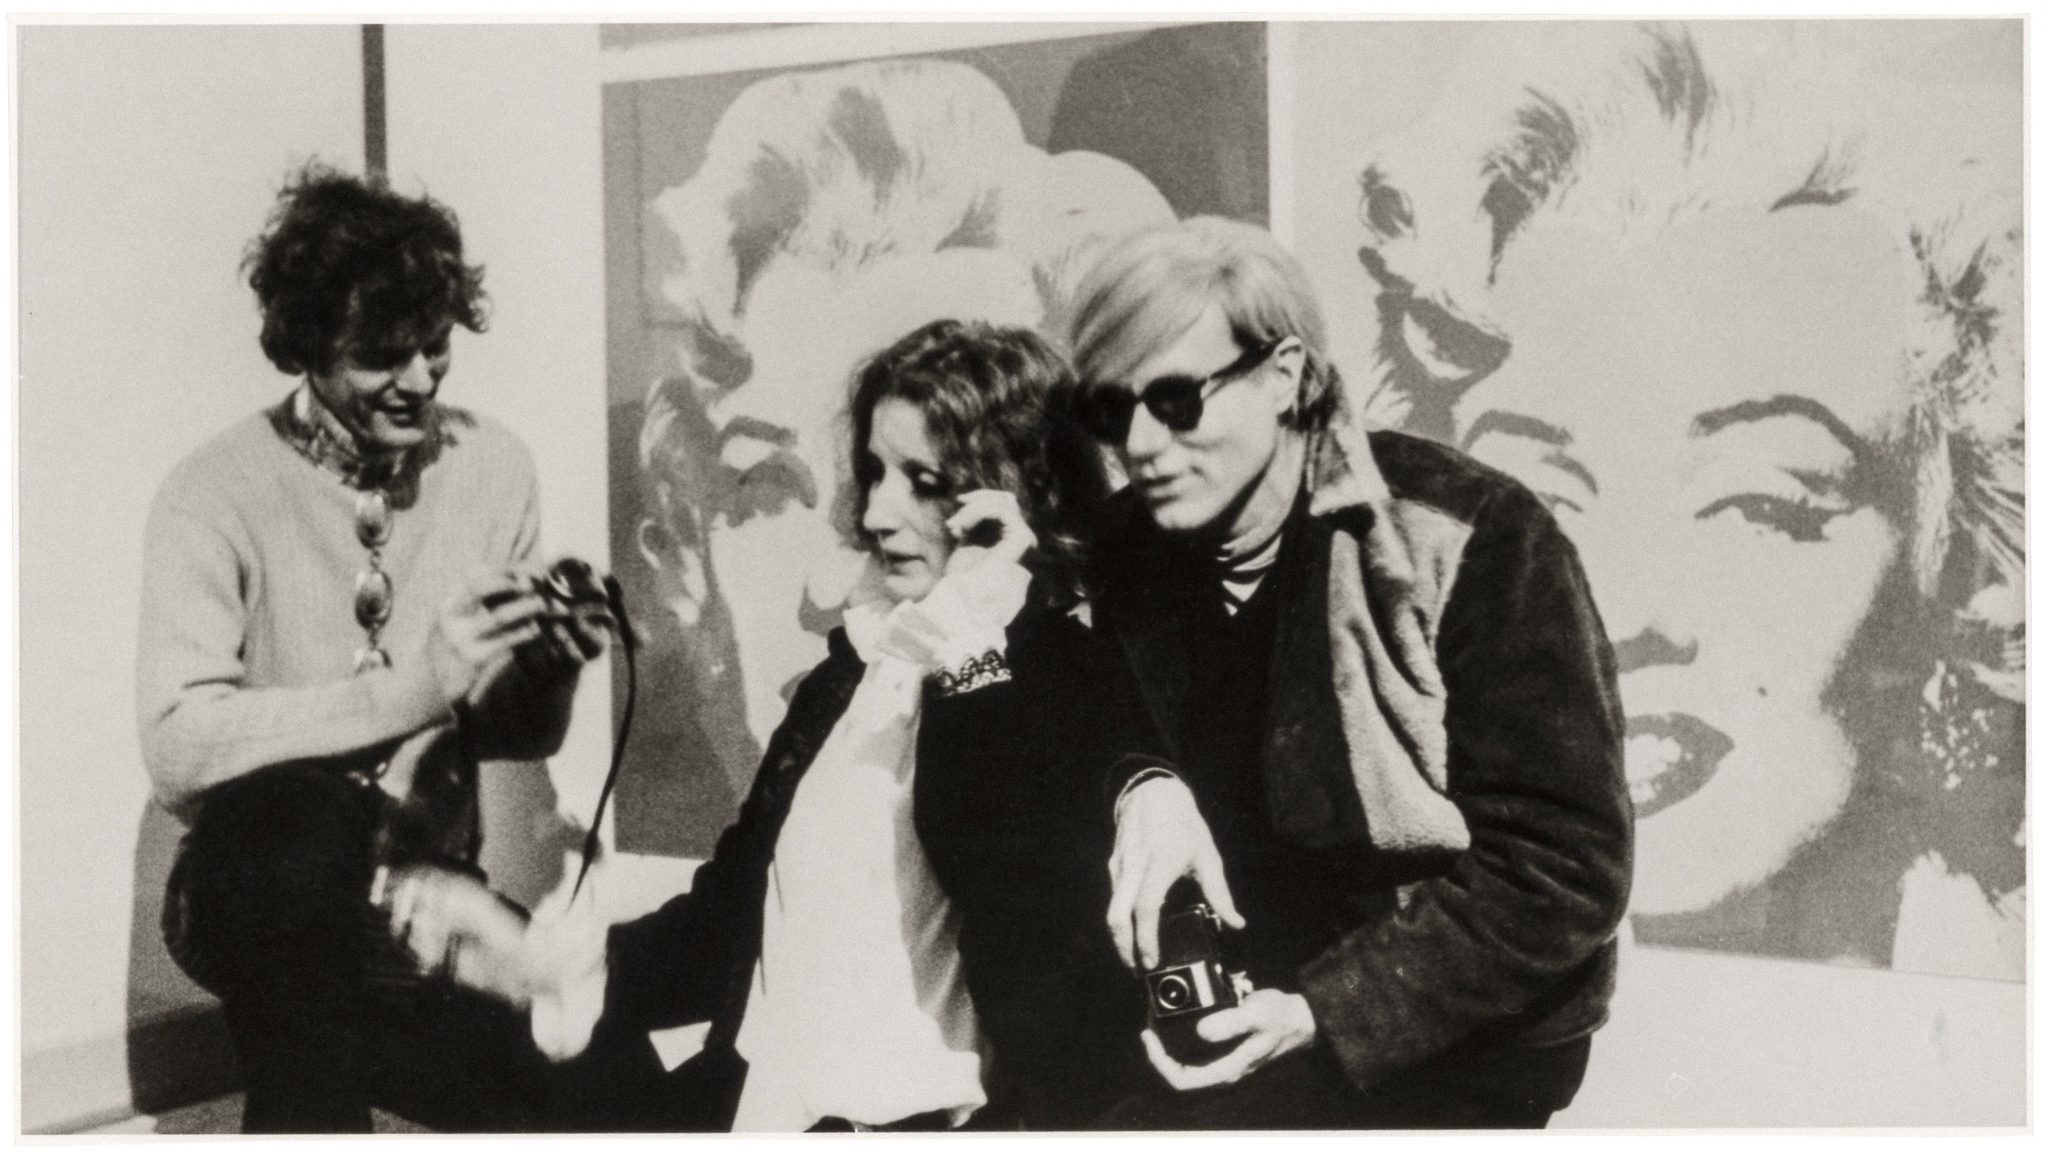 La vuotezza di Warhol, specchio di un’epoca. Stoccolma lo celebra dopo 50 anni